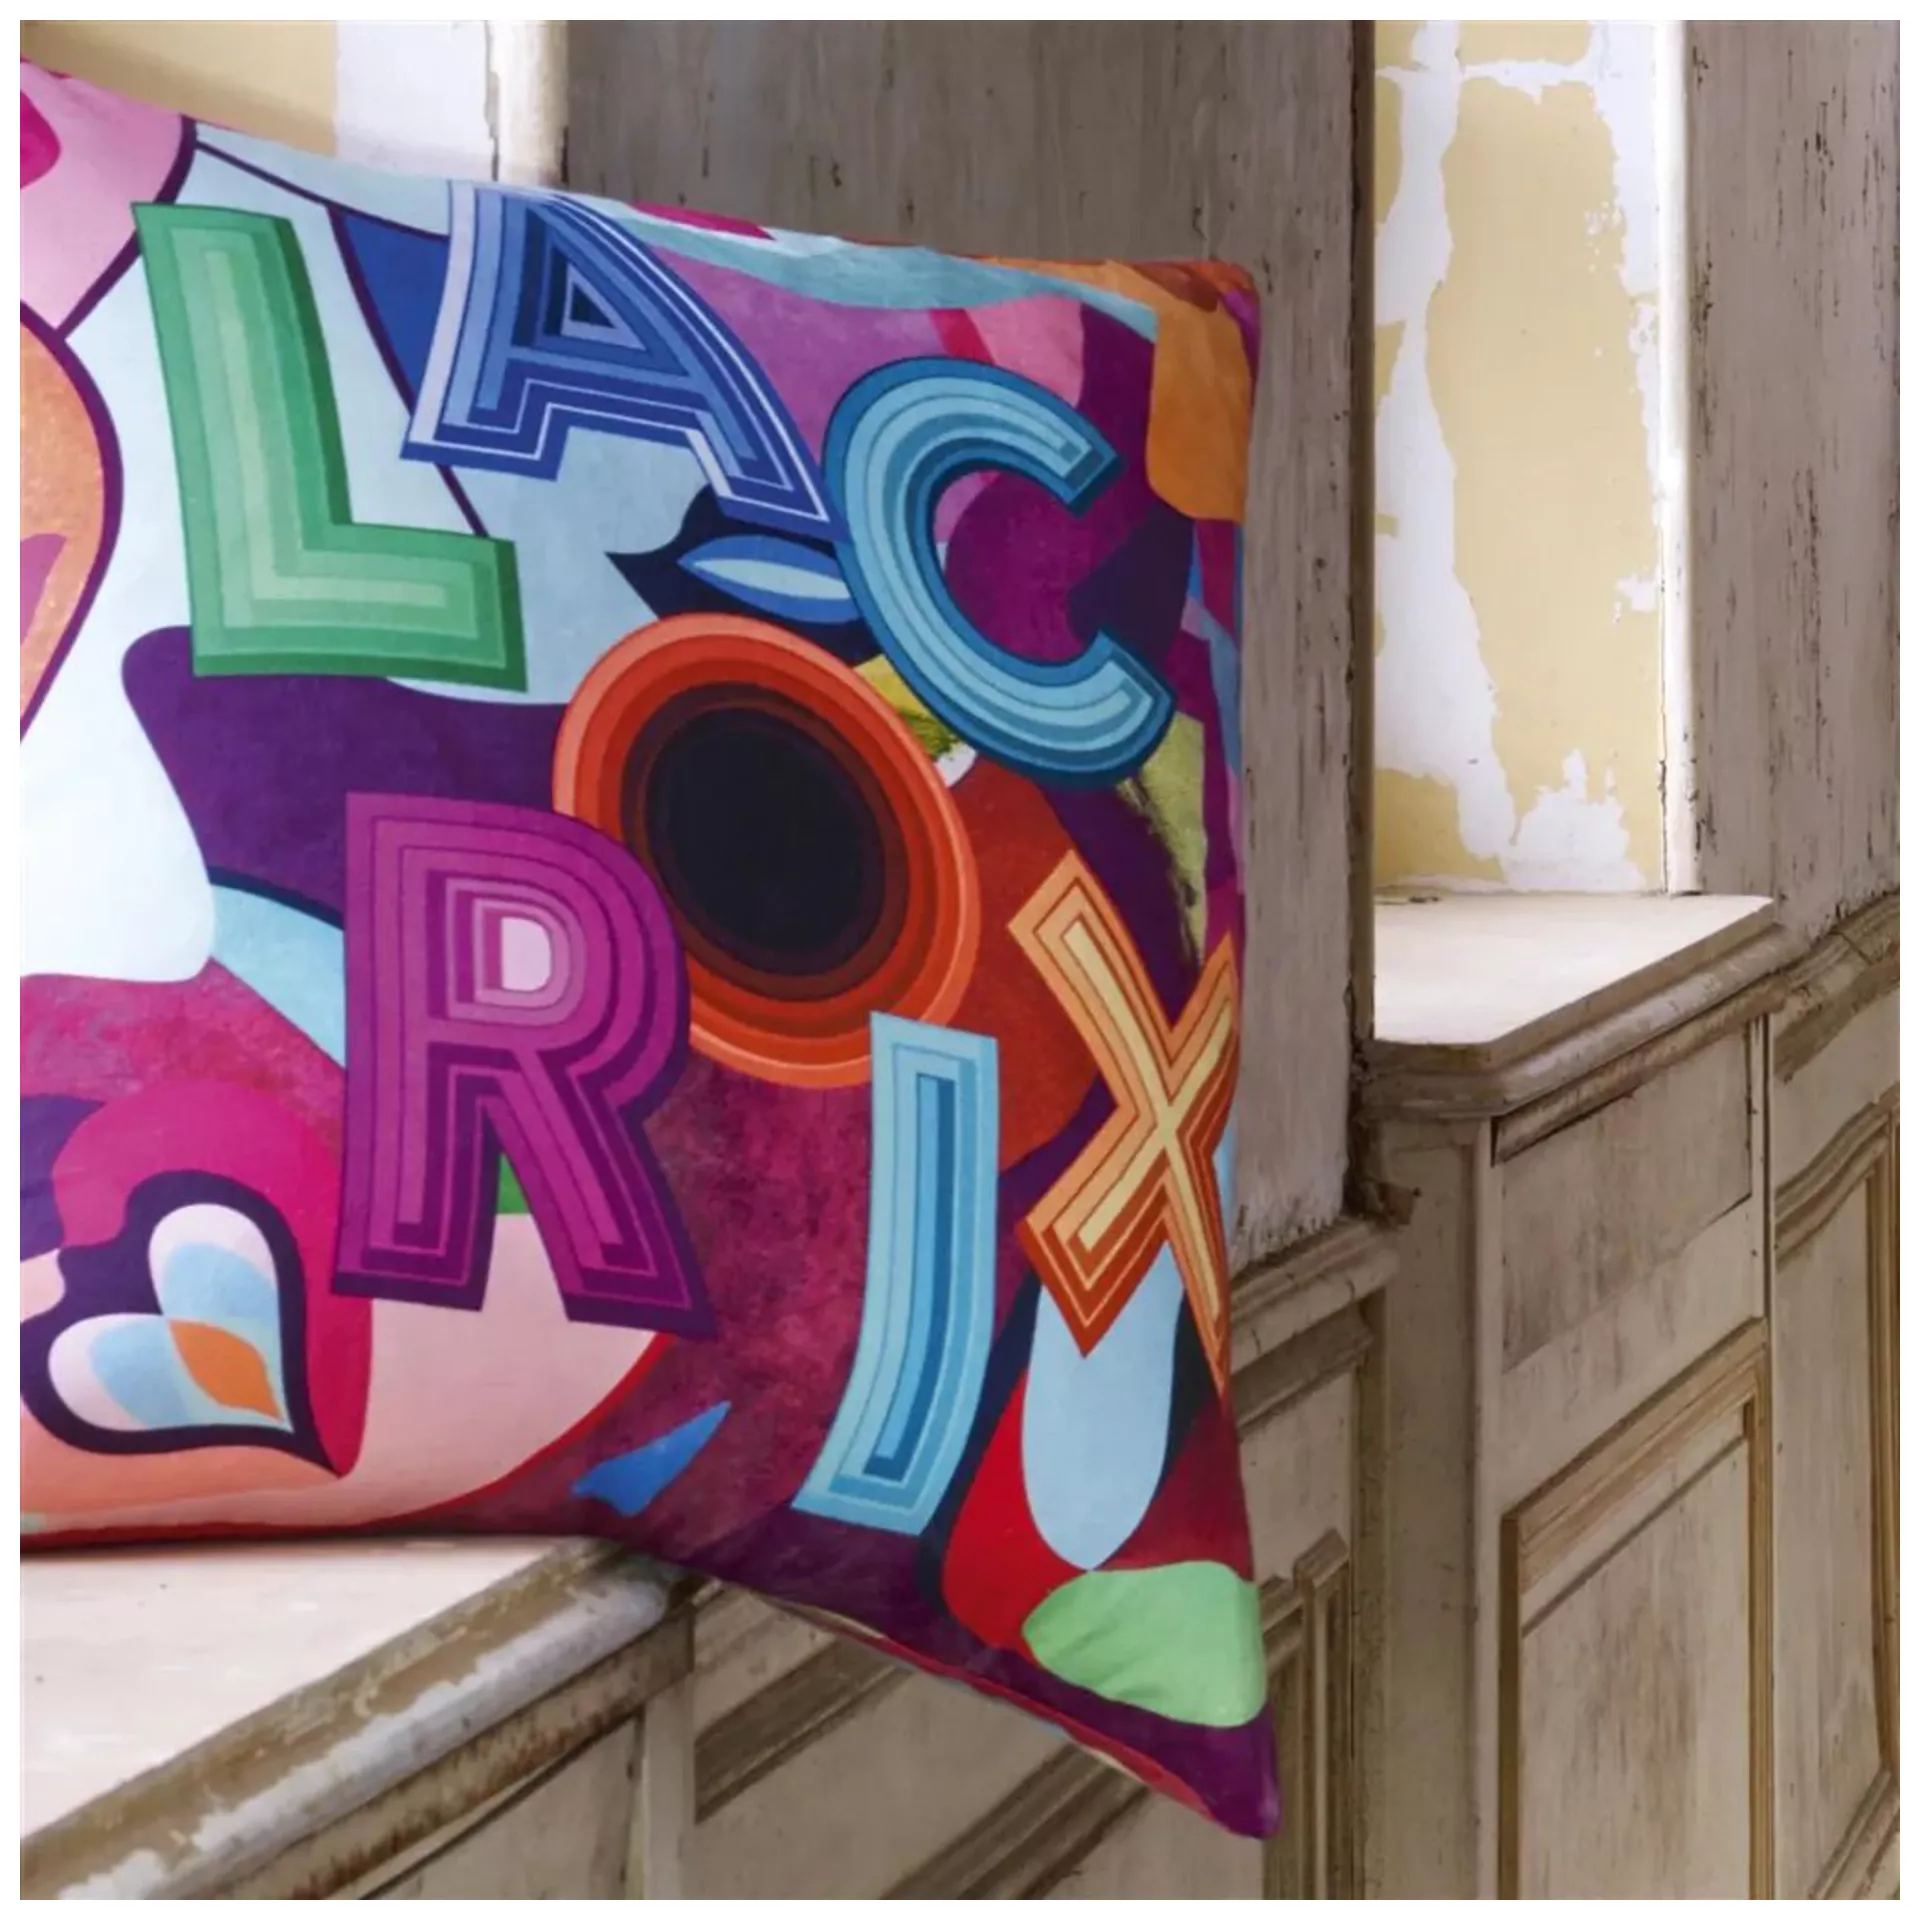 Kissen Lacroix Palette - Multicolore Designers Guild / Farbe: Mehrfarbig von Christian Lacroix